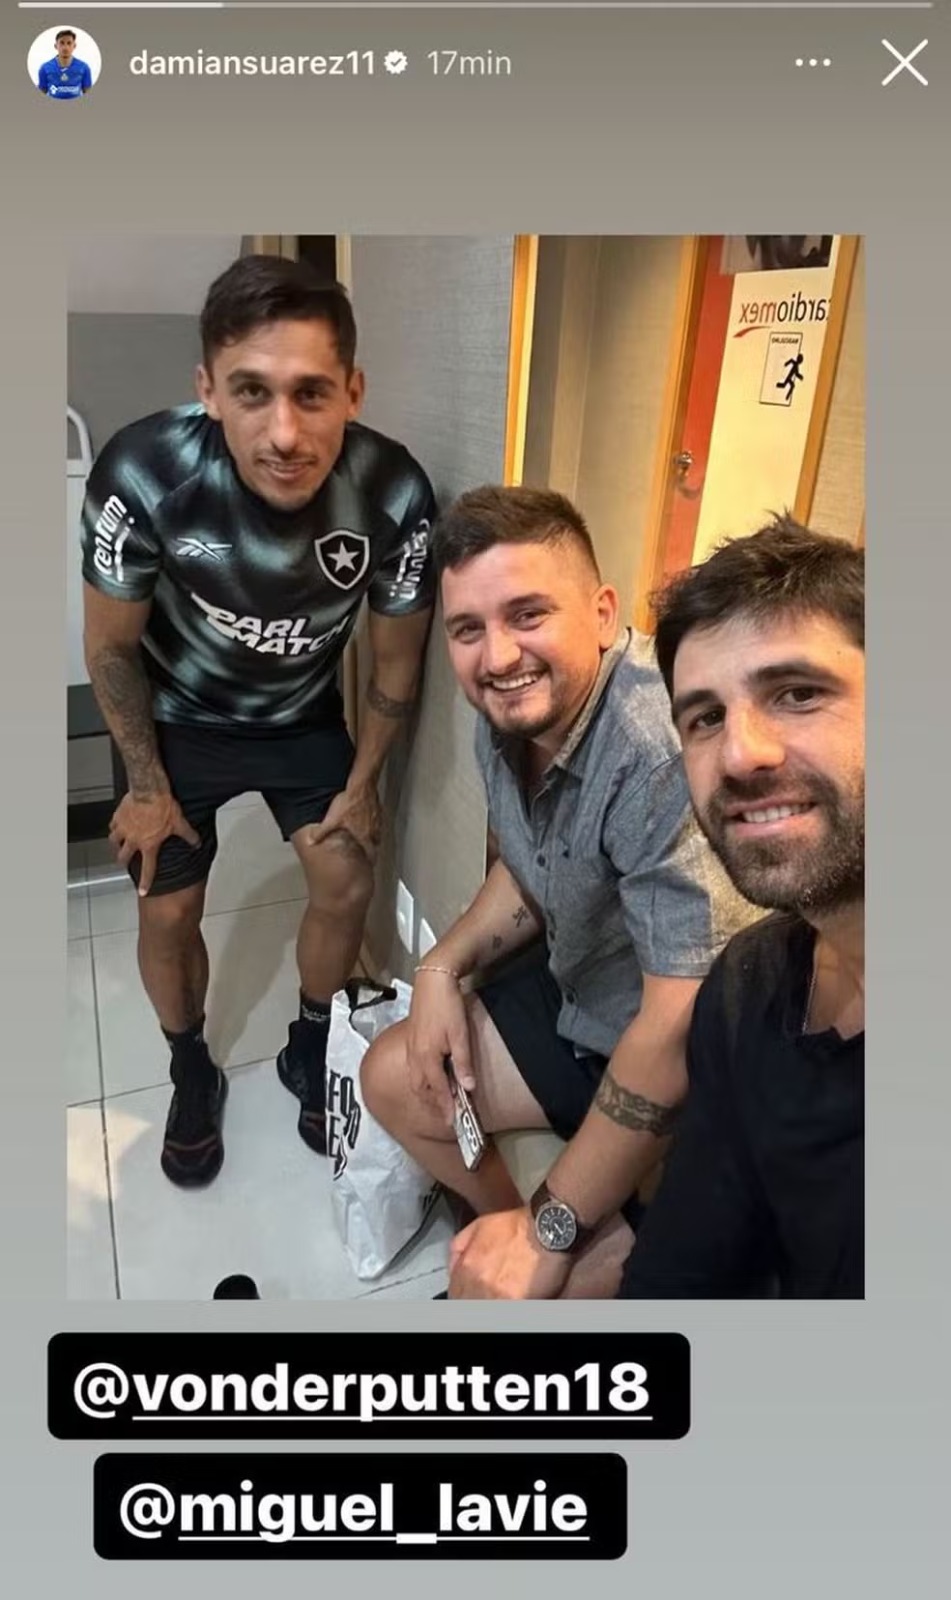 Damían Suárez com a camisa de treino do Botafogo